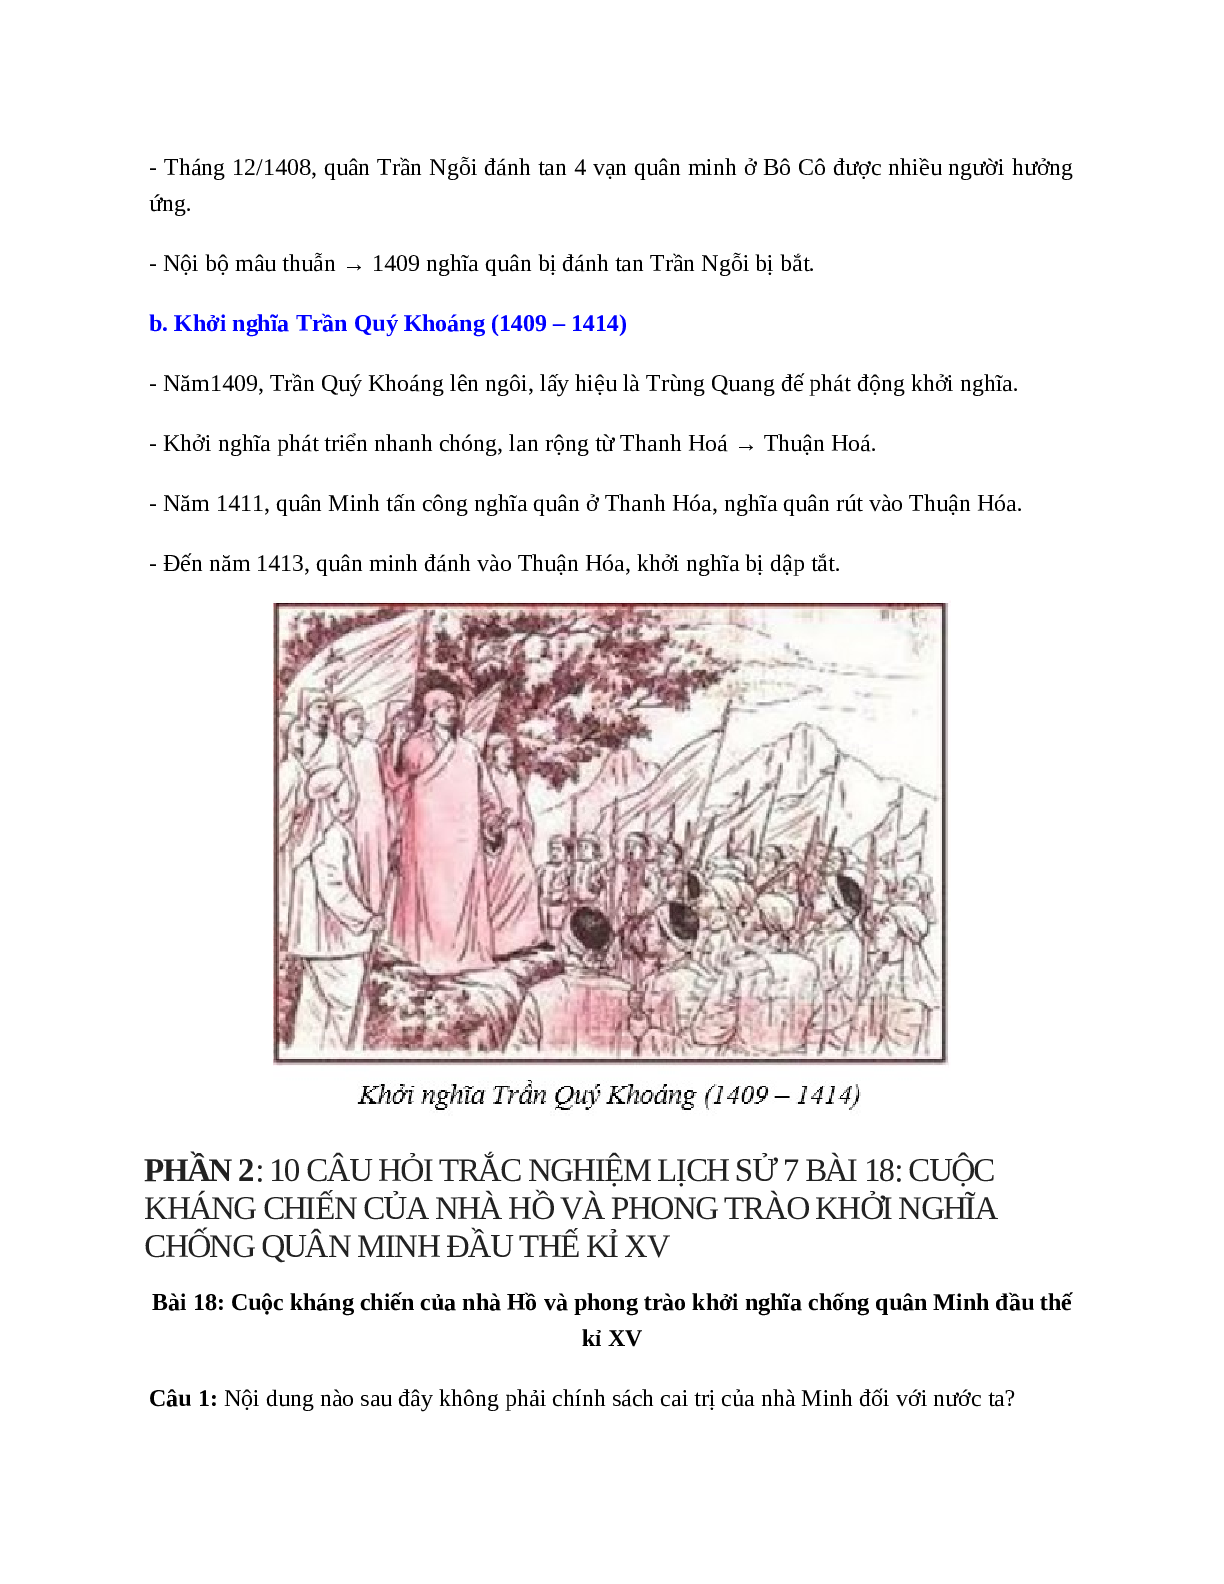 Lịch Sử 7 Bài 18 (Lý thuyết và trắc nghiệm): Cuộc kháng chiến của nhà Hồ và phong trào khởi nghĩa chống quân Minh đầu thế kỉ XV (trang 3)